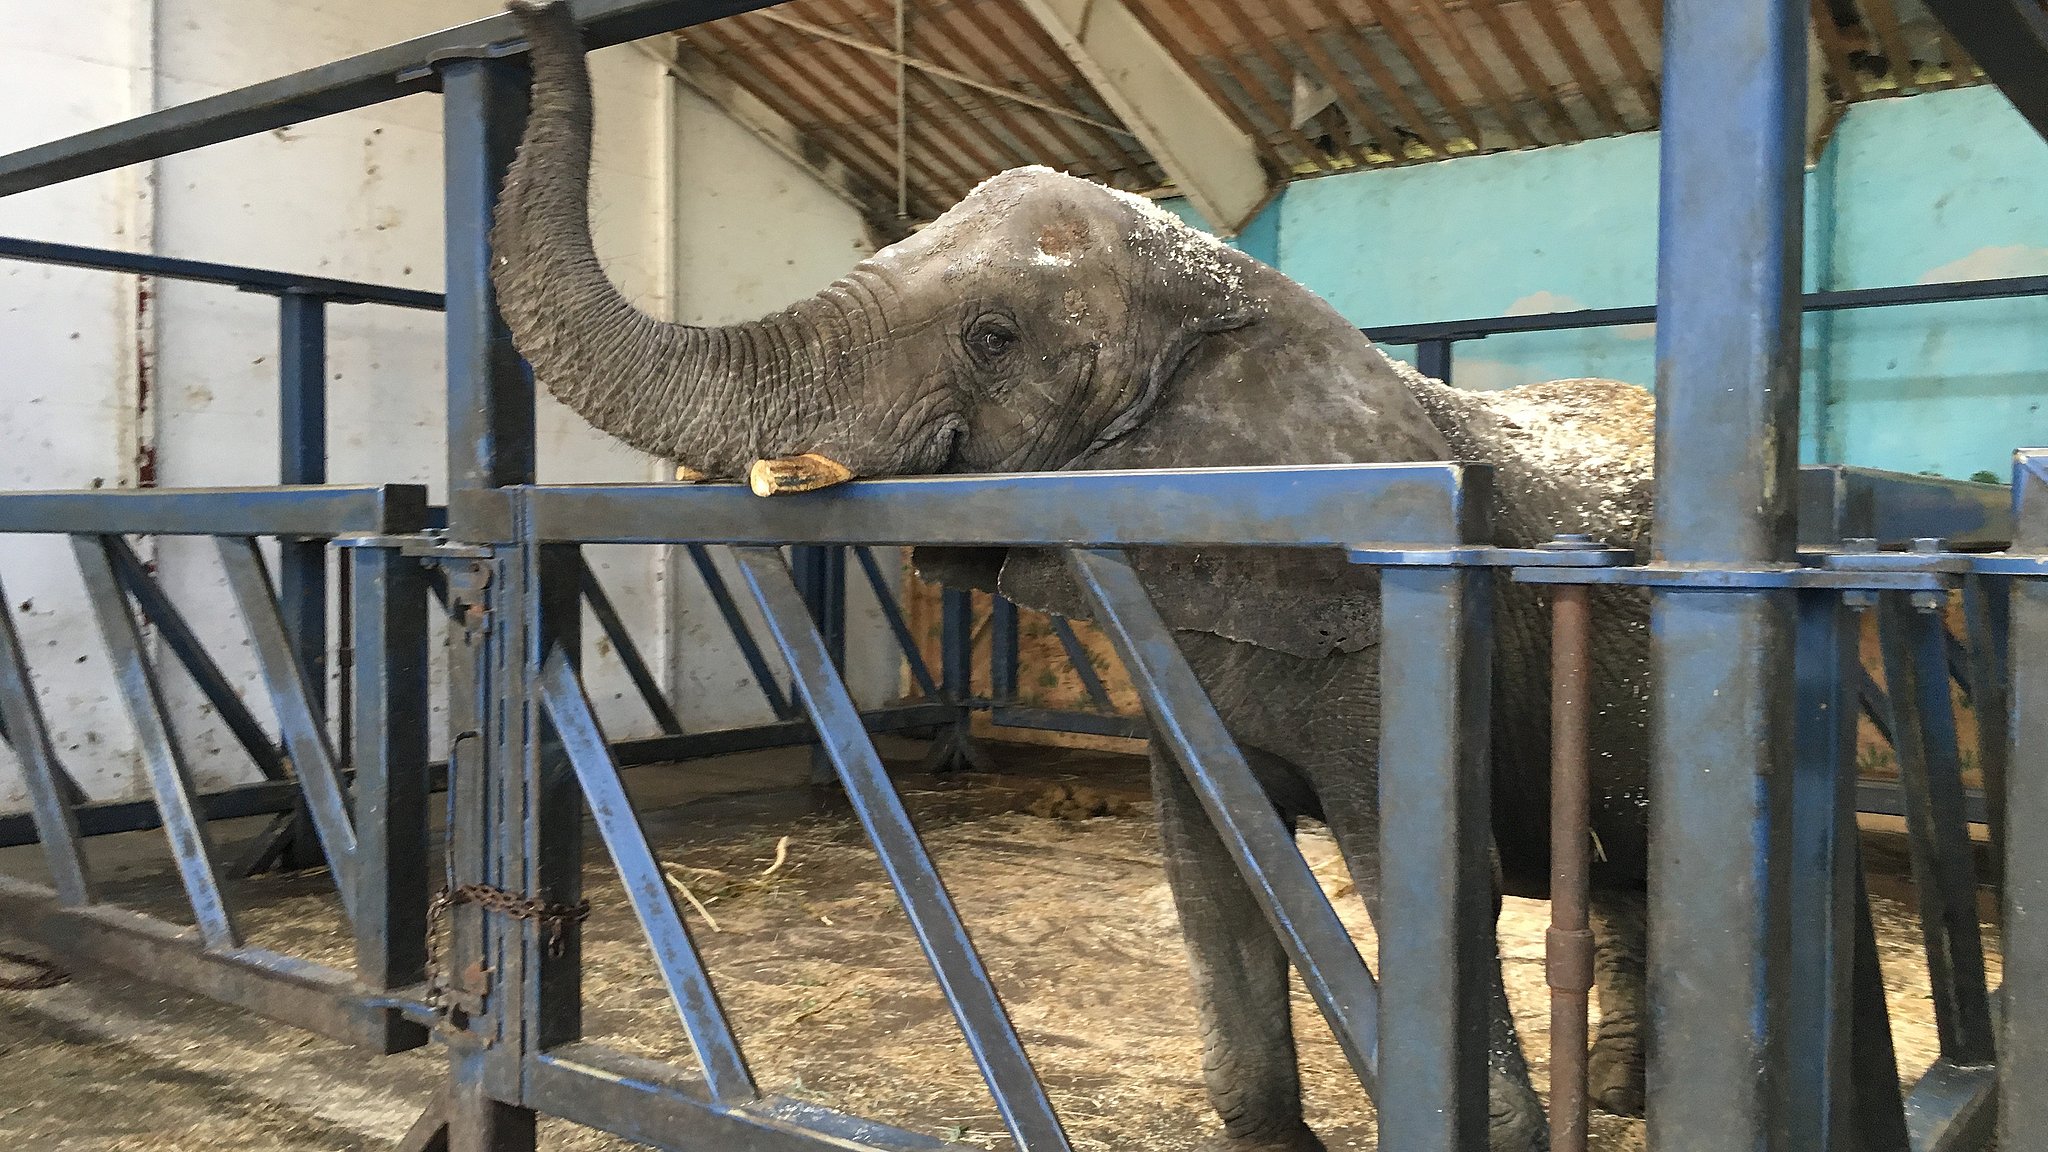 Næste kapillærer privatliv Ny aftale - staten køber Cirkus Arenas elefanter | TV2 ØST